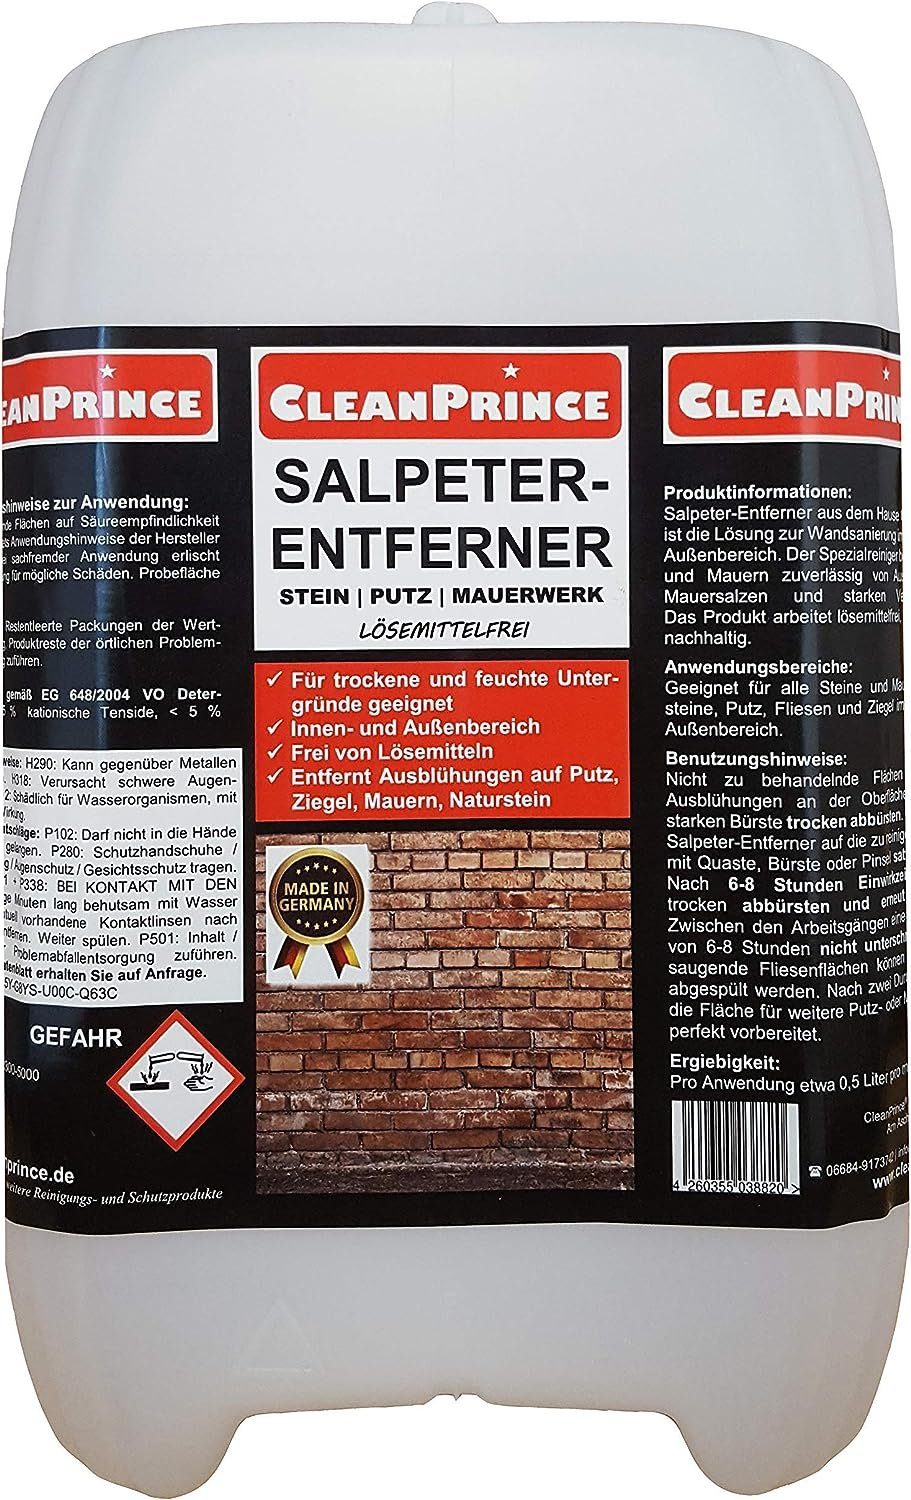 5 Sprühreiniger Salpeter Salpeter-Entferner Reinigungsmittel CleanPrince Liter